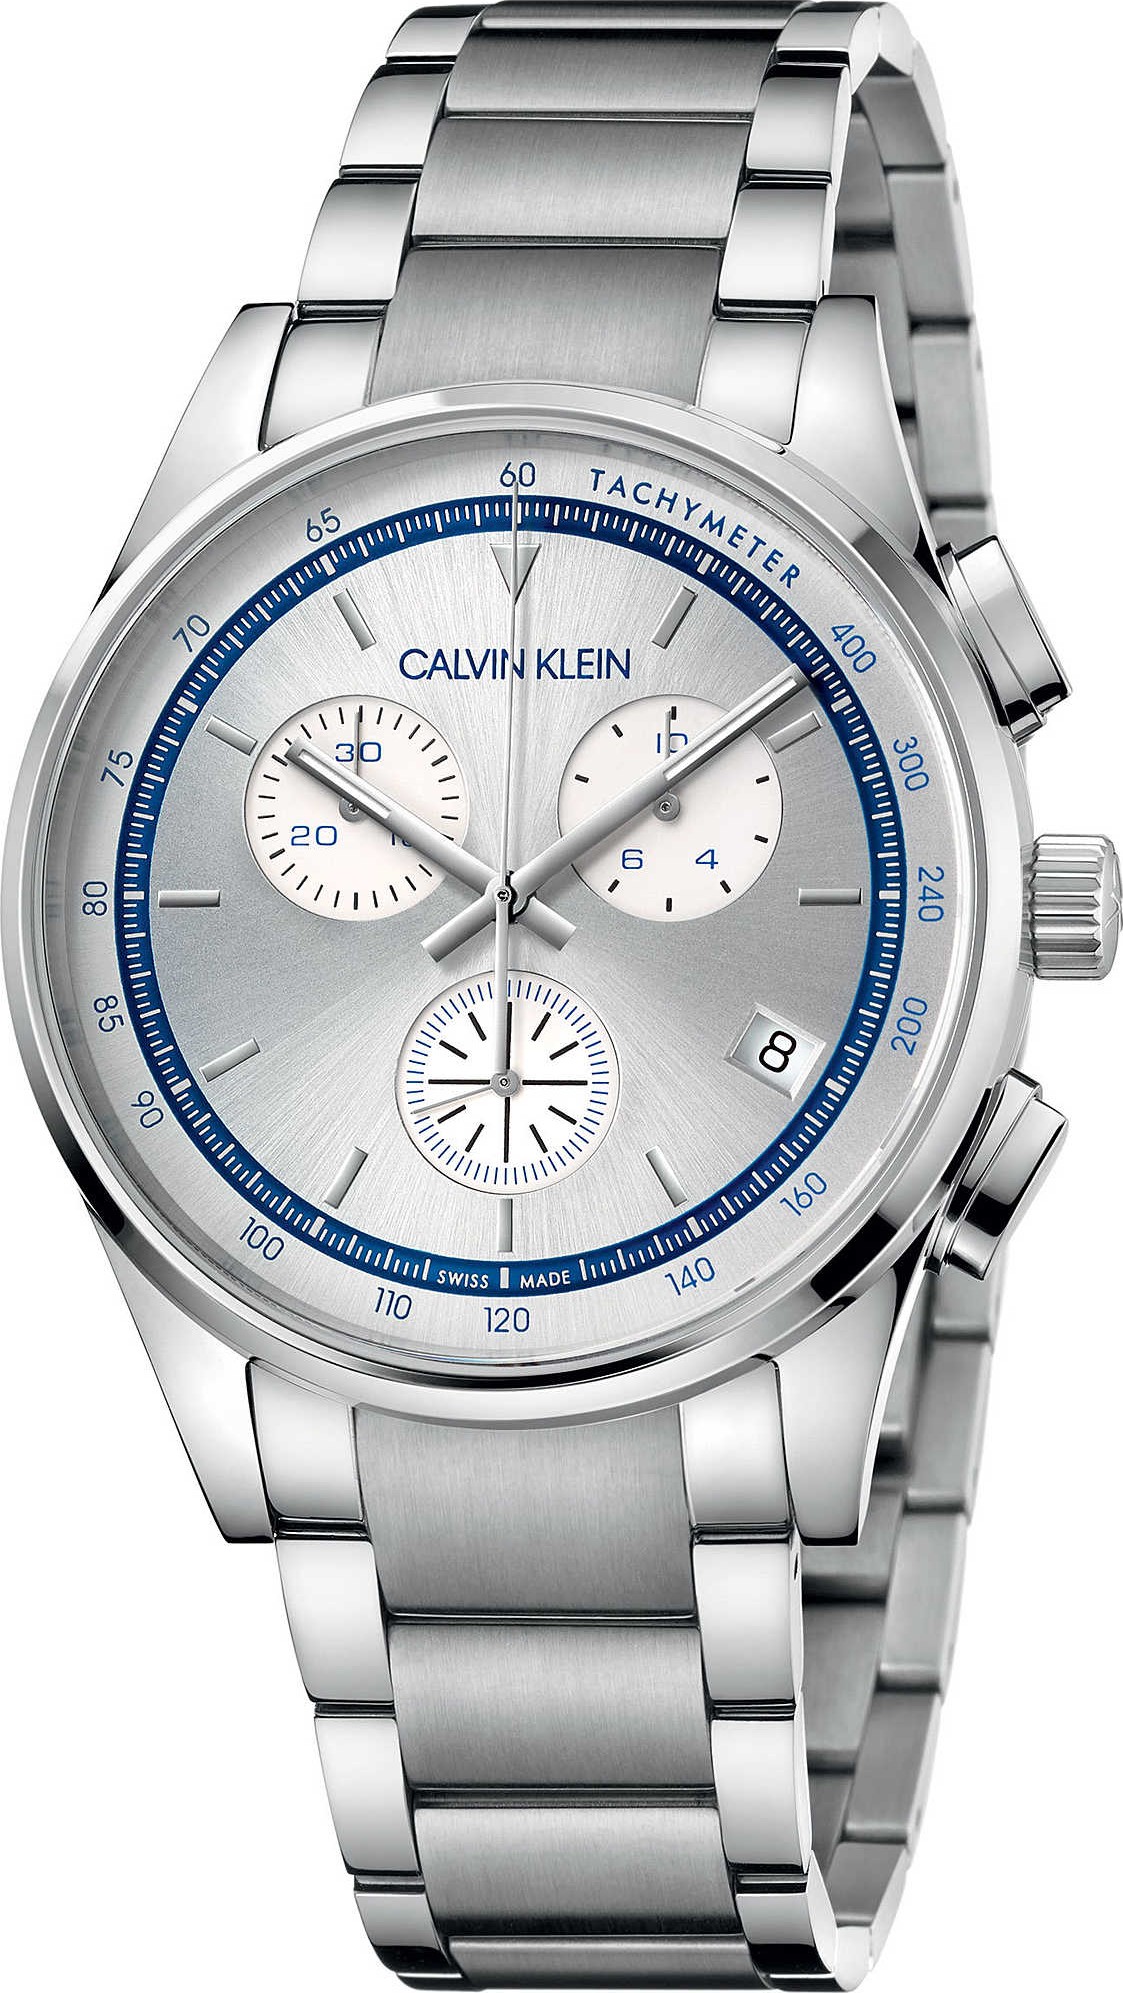 Calvin Klein KAM27146 Completion Watch 43mm